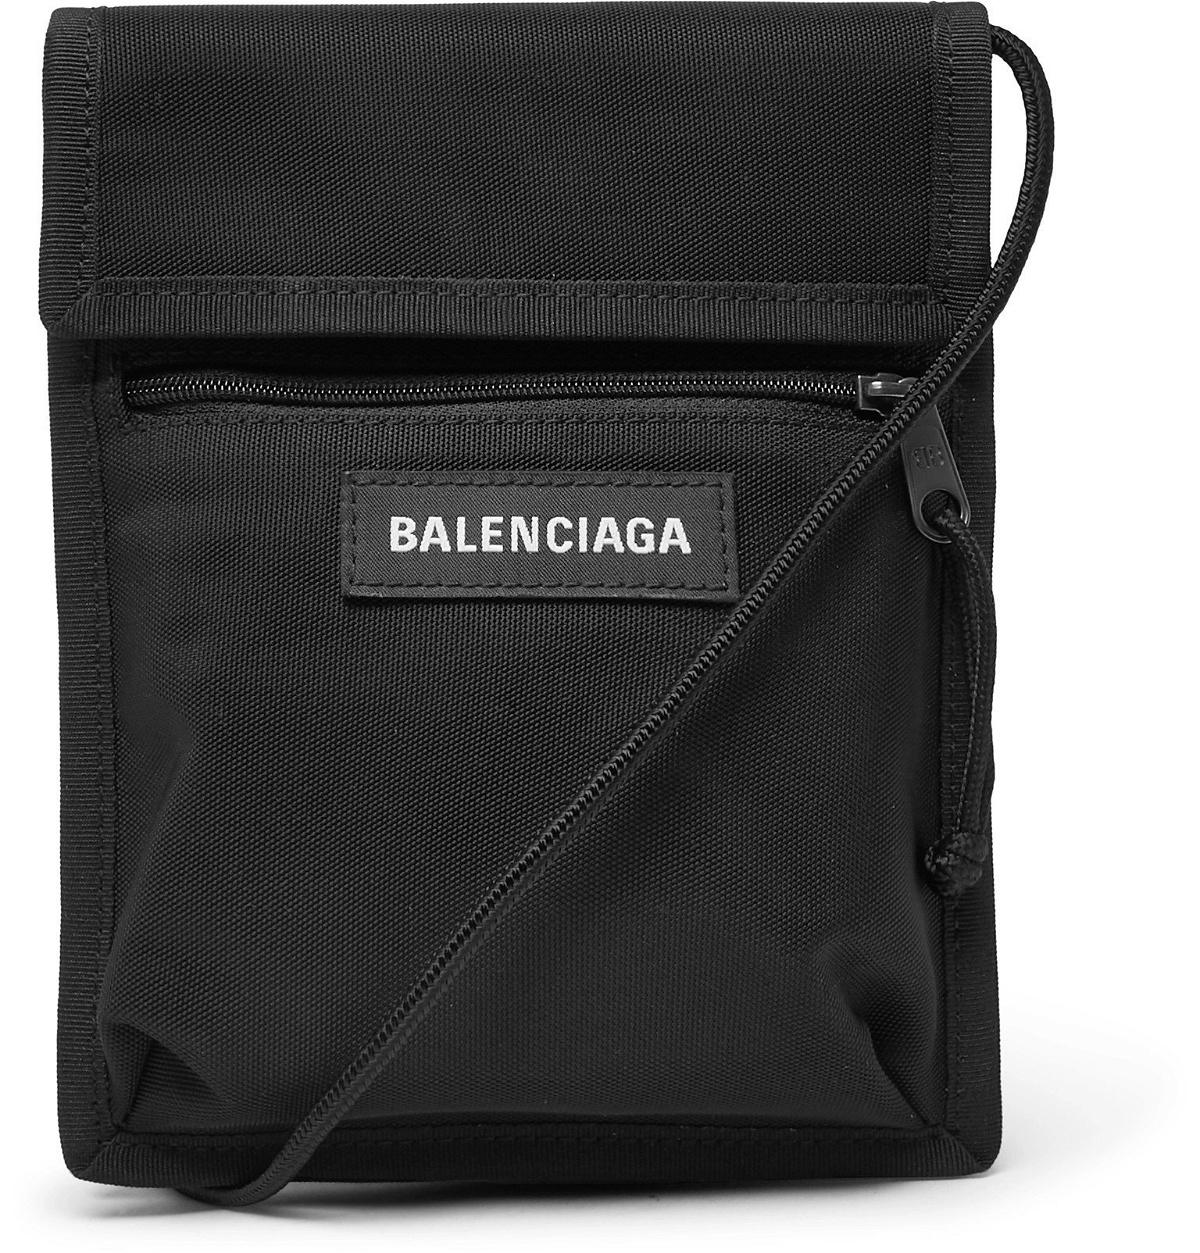 Balenciaga - Explorer Canvas Messenger Bag - Black Balenciaga